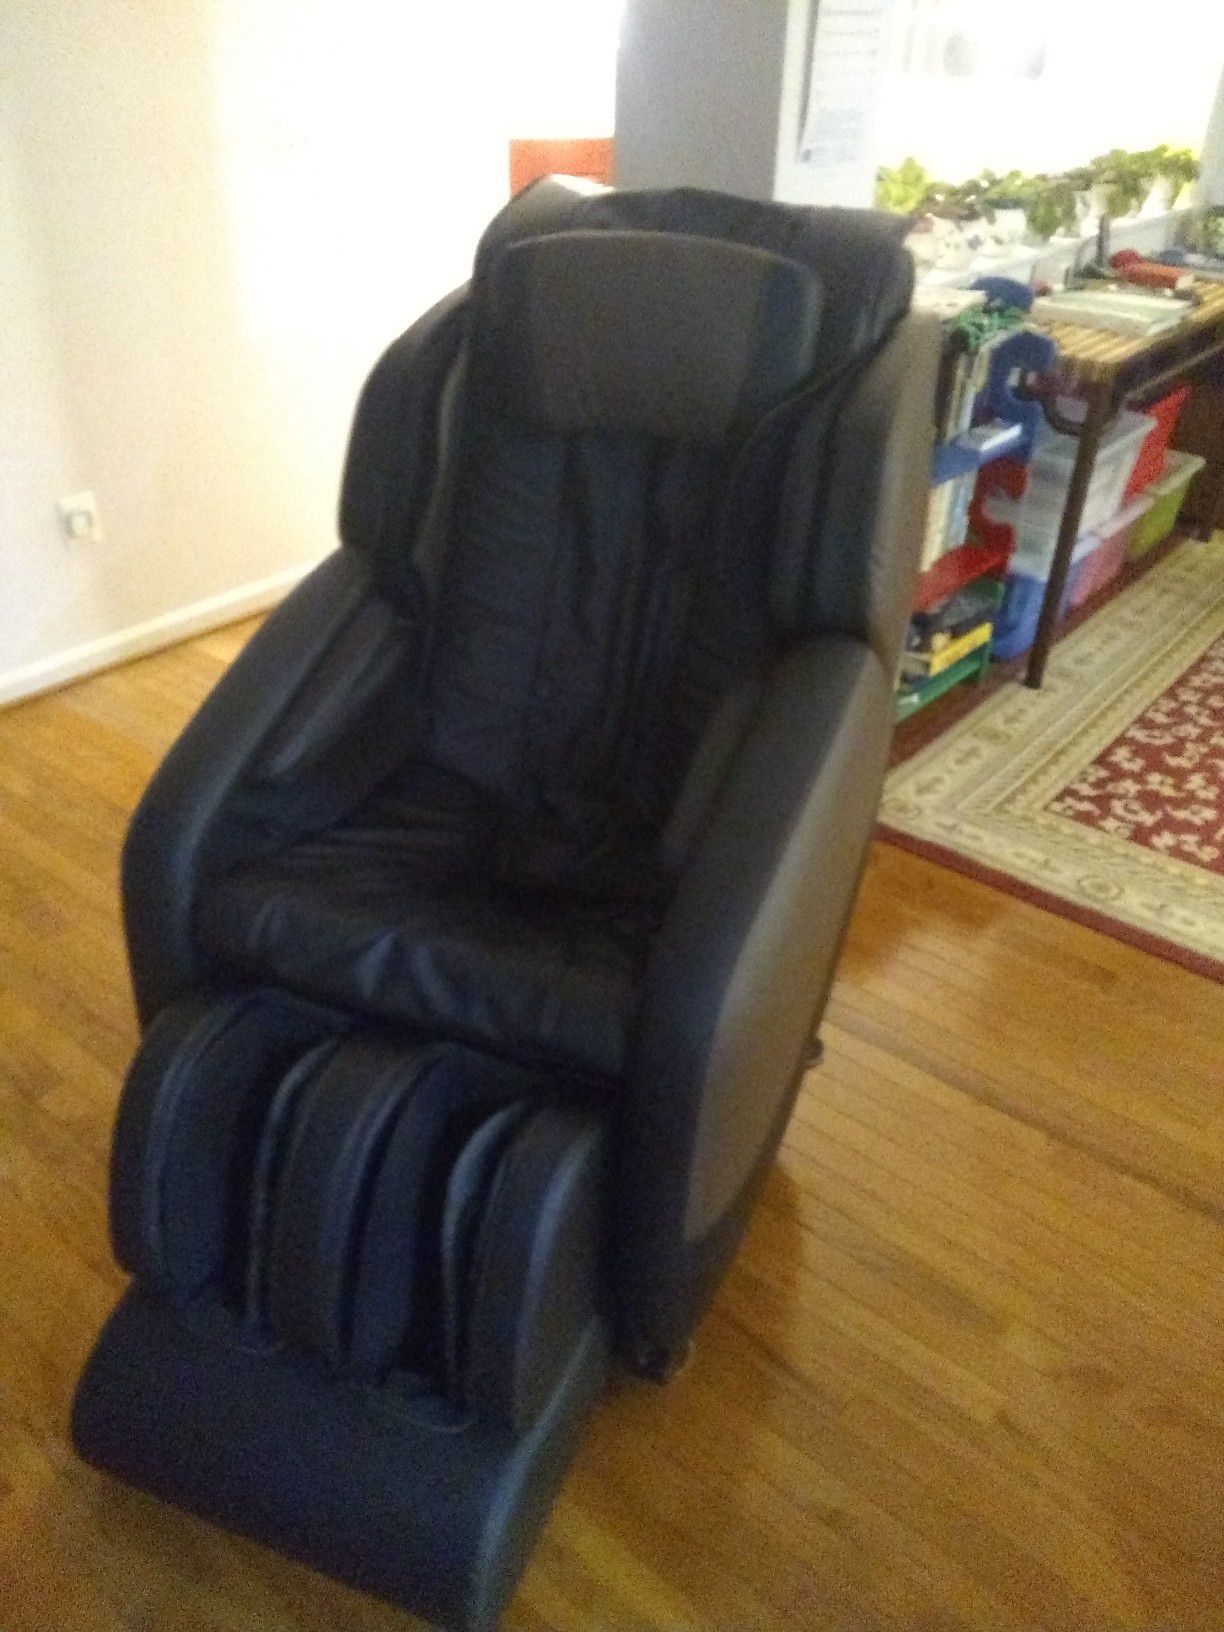 Zero gravity massage chair by brookstone